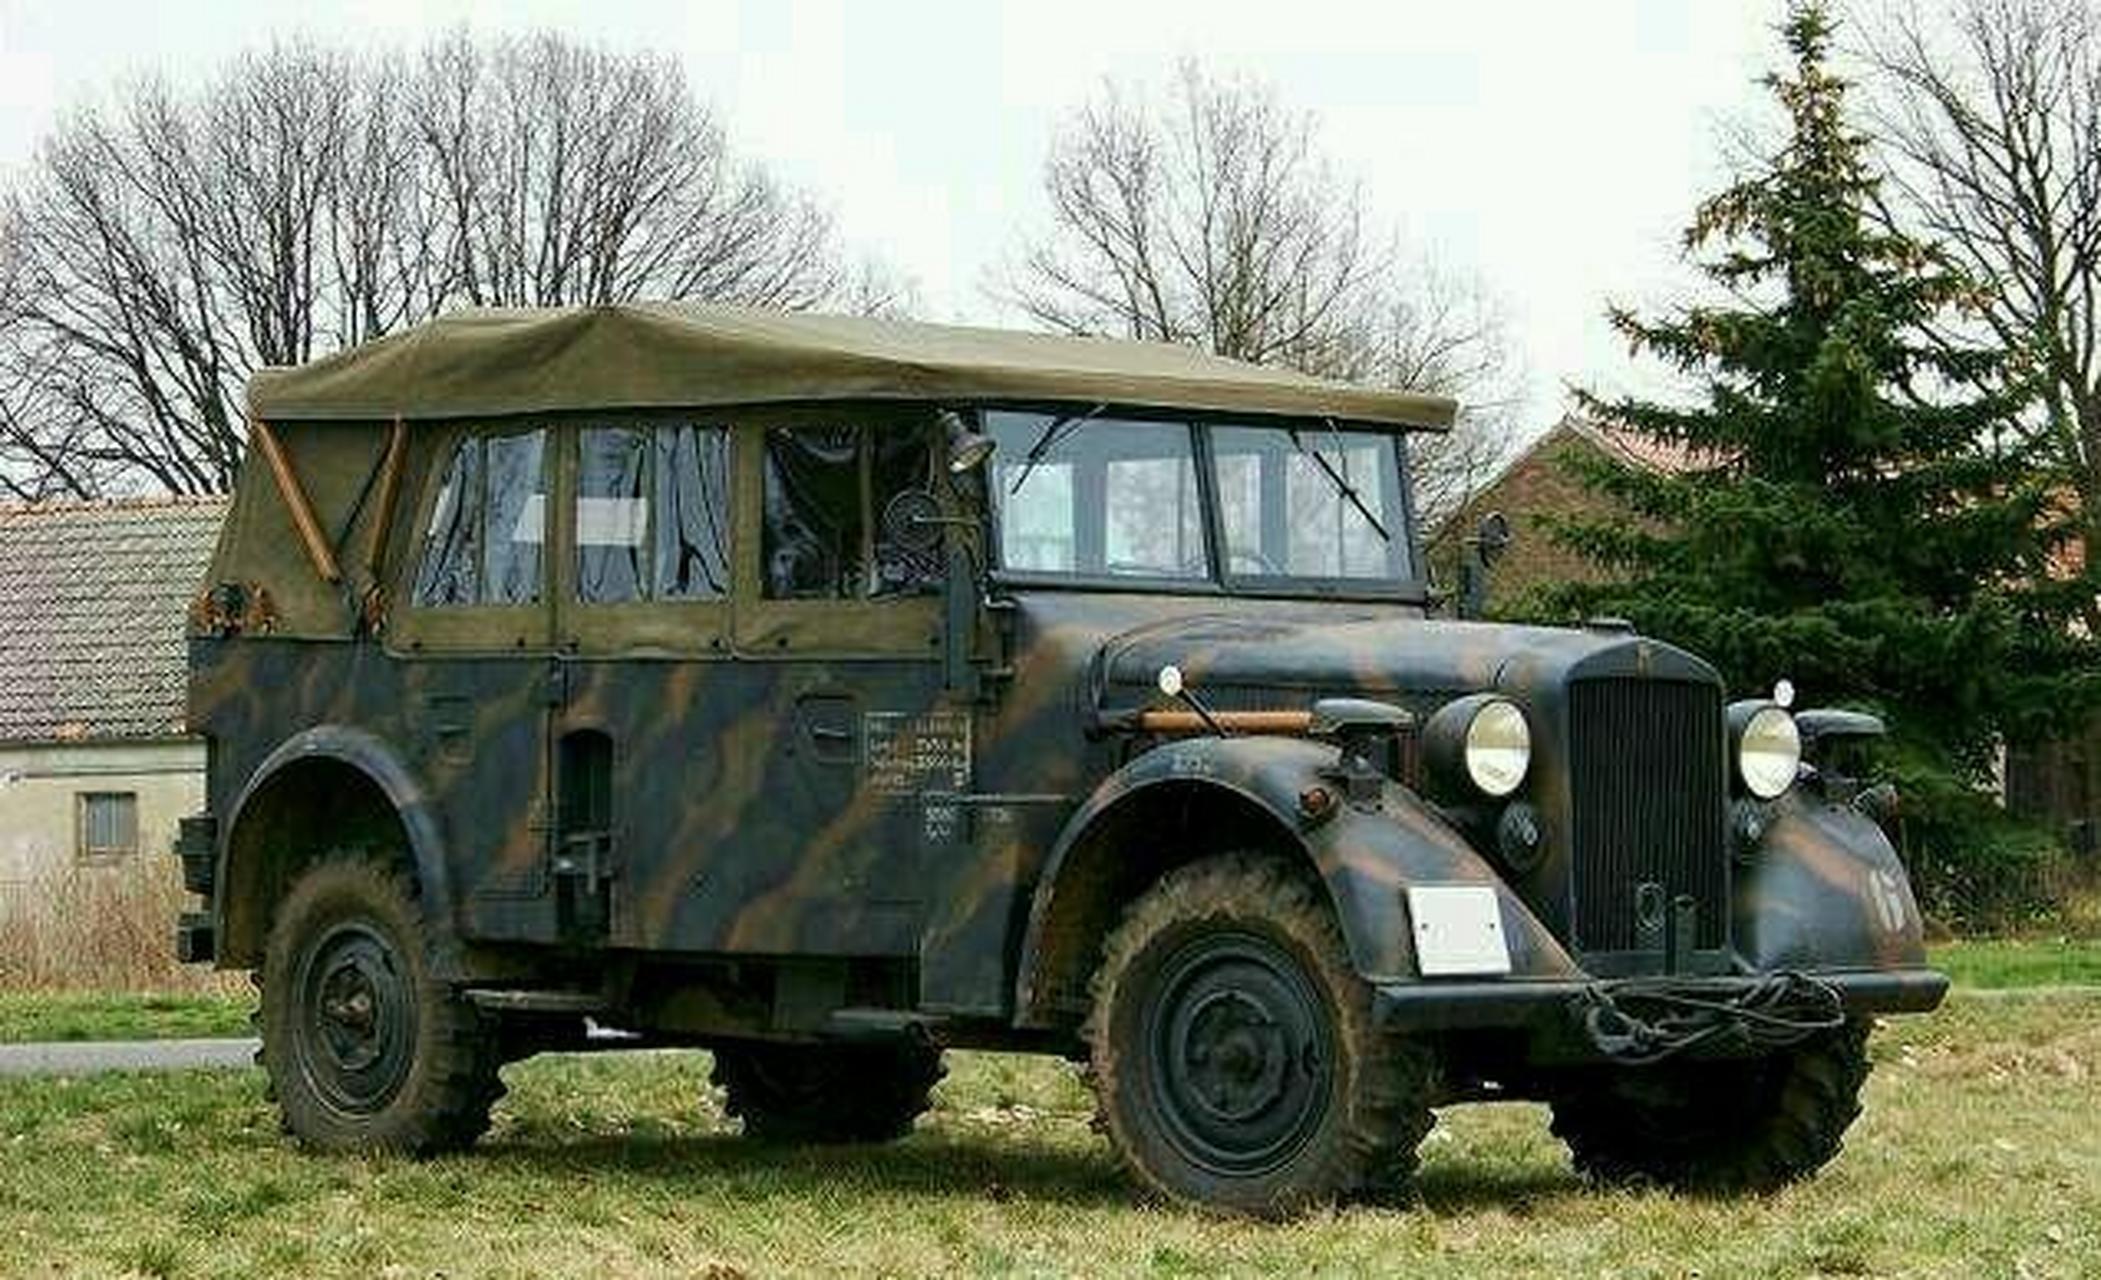 霍希901野战指挥车由德国研制,是二战时德军所使用的一款优秀汽车,全